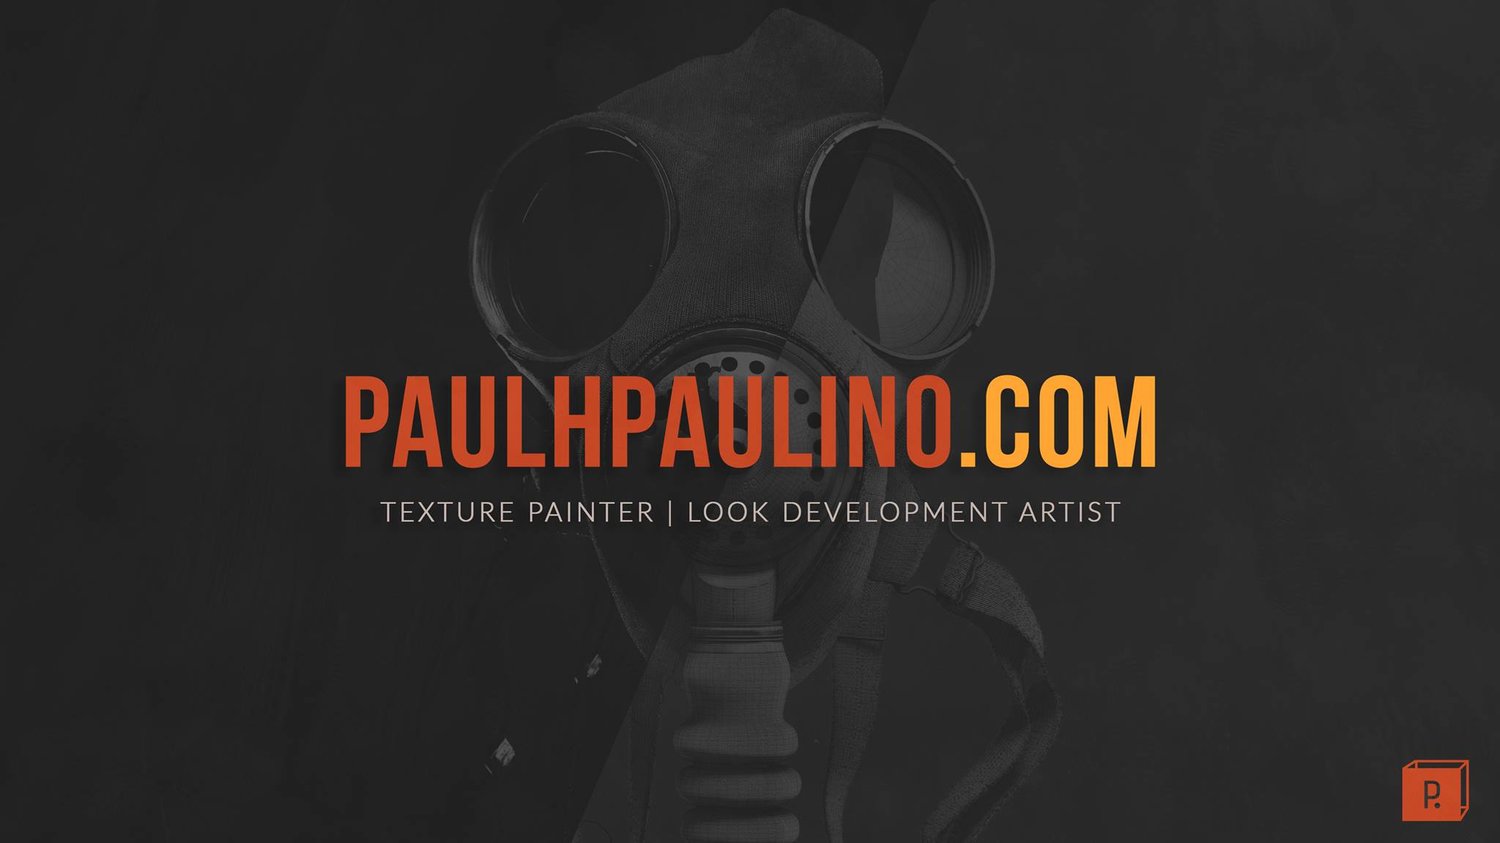 www.paulhpaulino.com